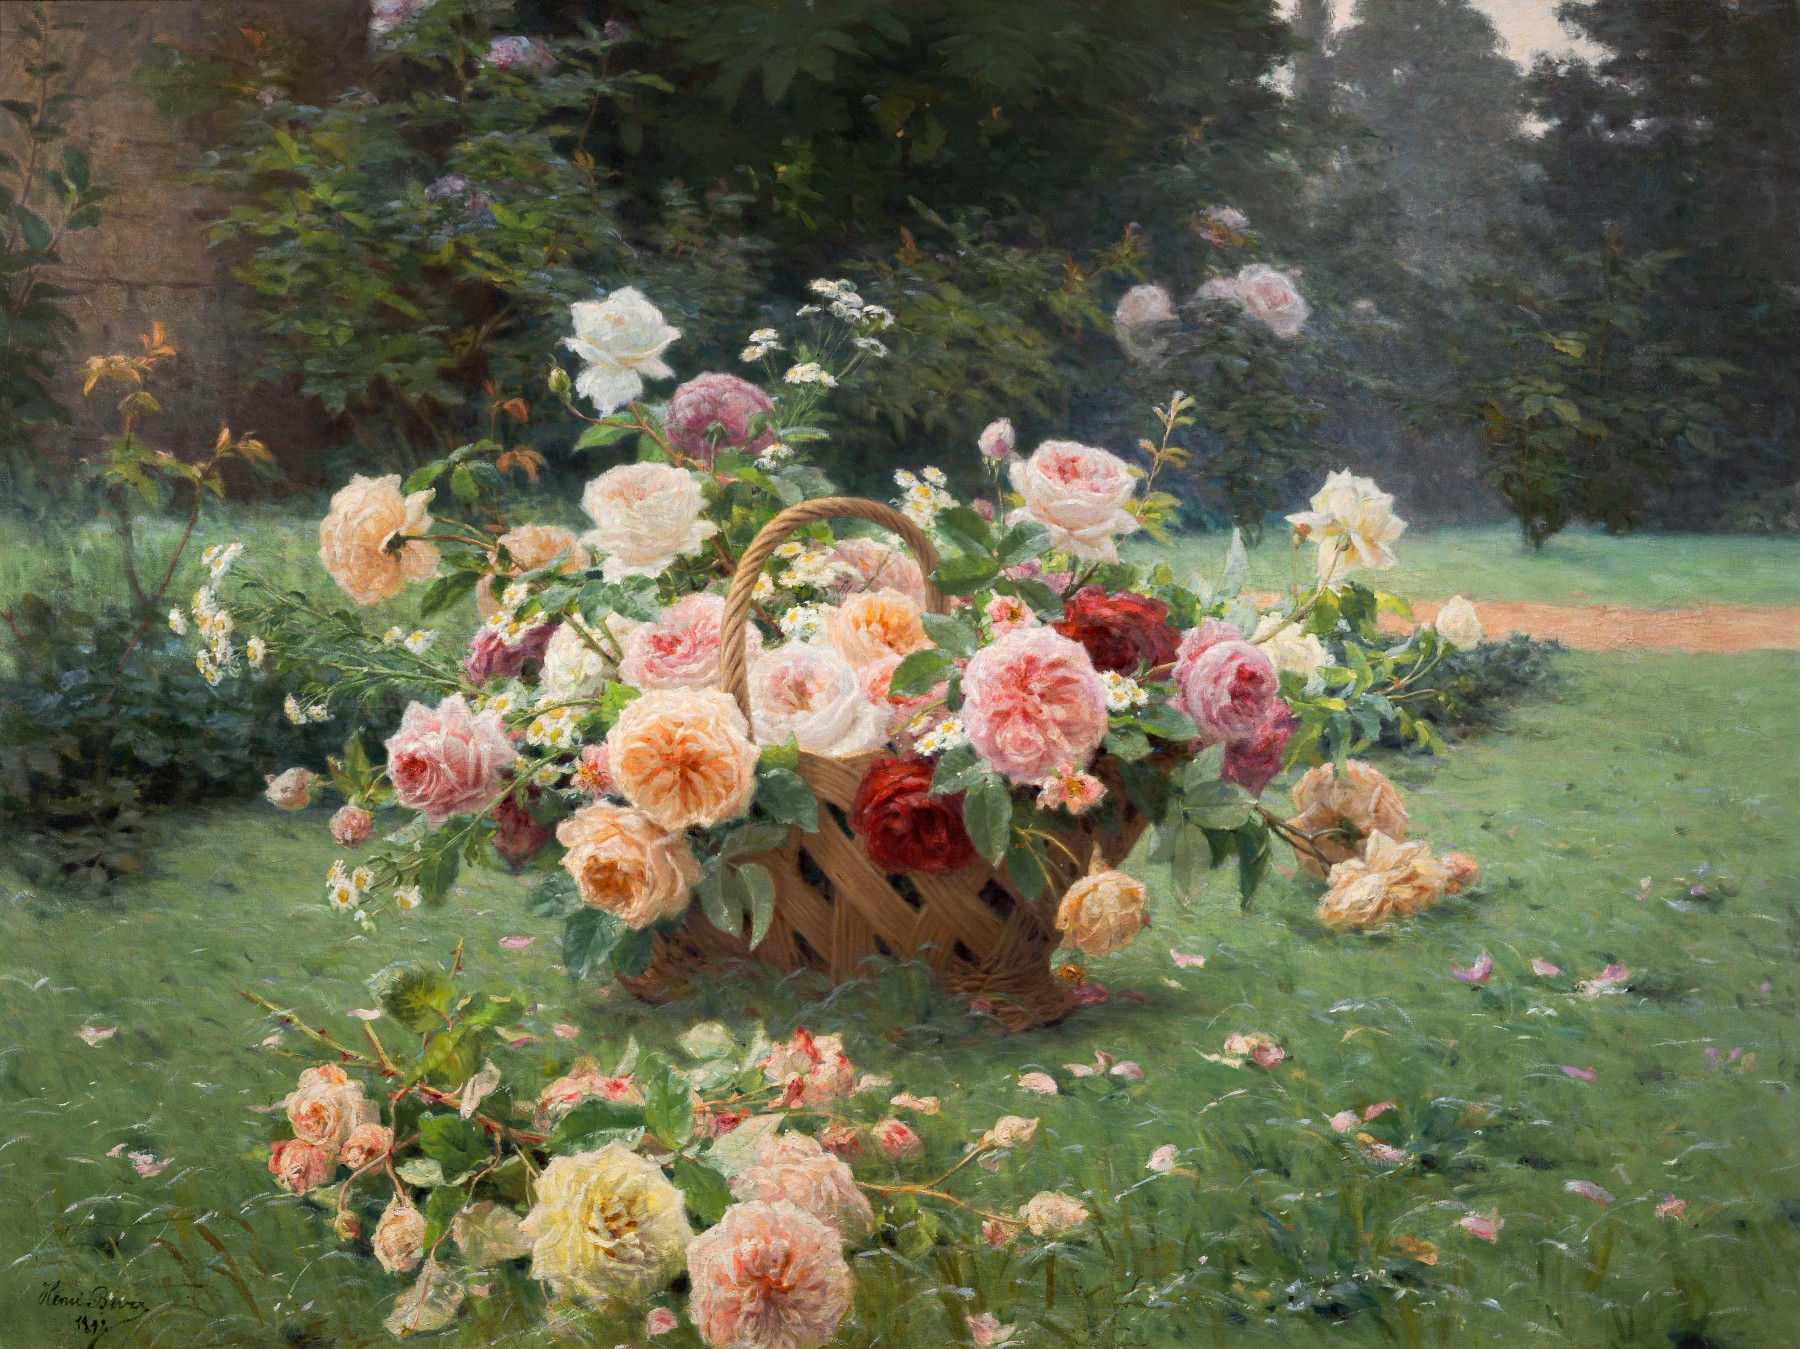 장미 바구니(The Basket of Roses) by Henri Biva - 1891 - 160 x 120 cm 